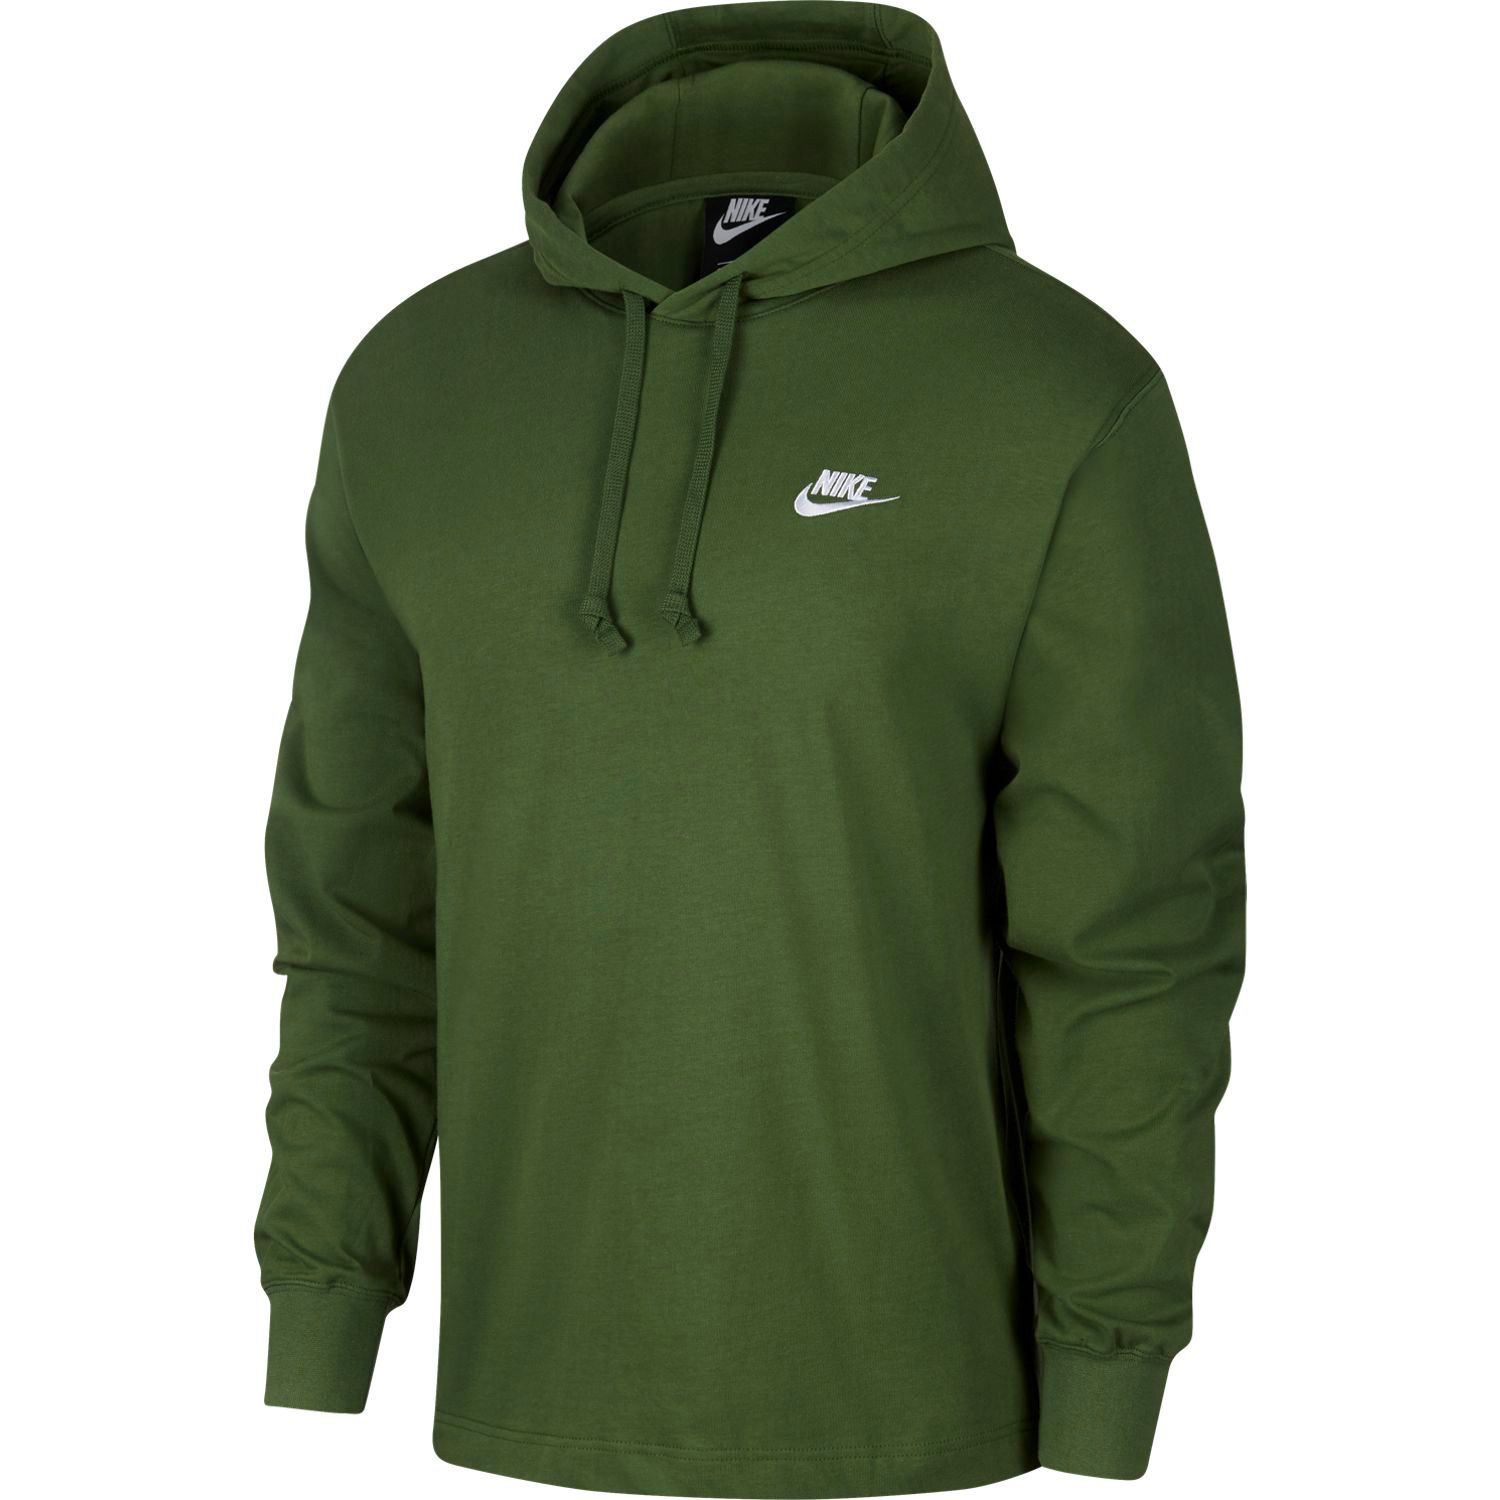 olive green nike zip up hoodie